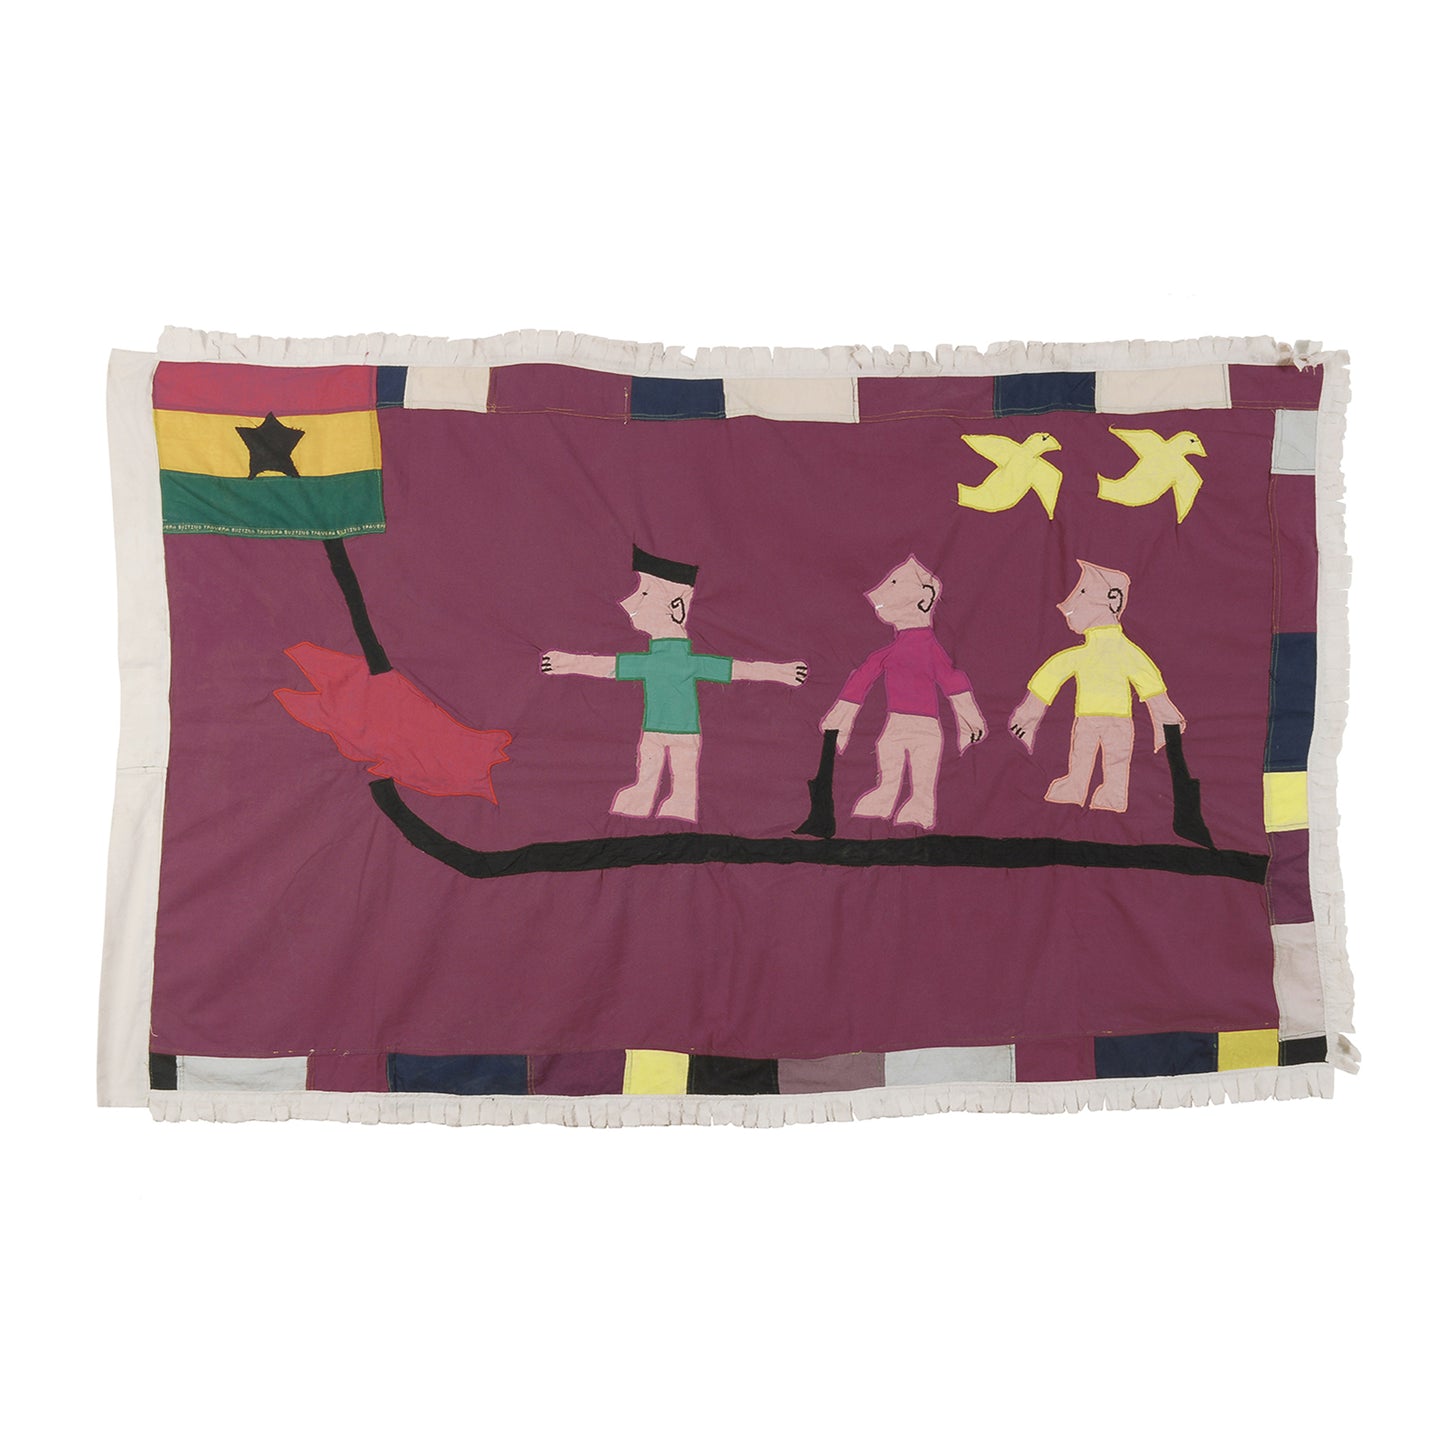 Αυθεντική σημαία Asafo από την Γκάνα - Σύμβολο παράδοσης και ανδρείας Δυτικής Αφρικής